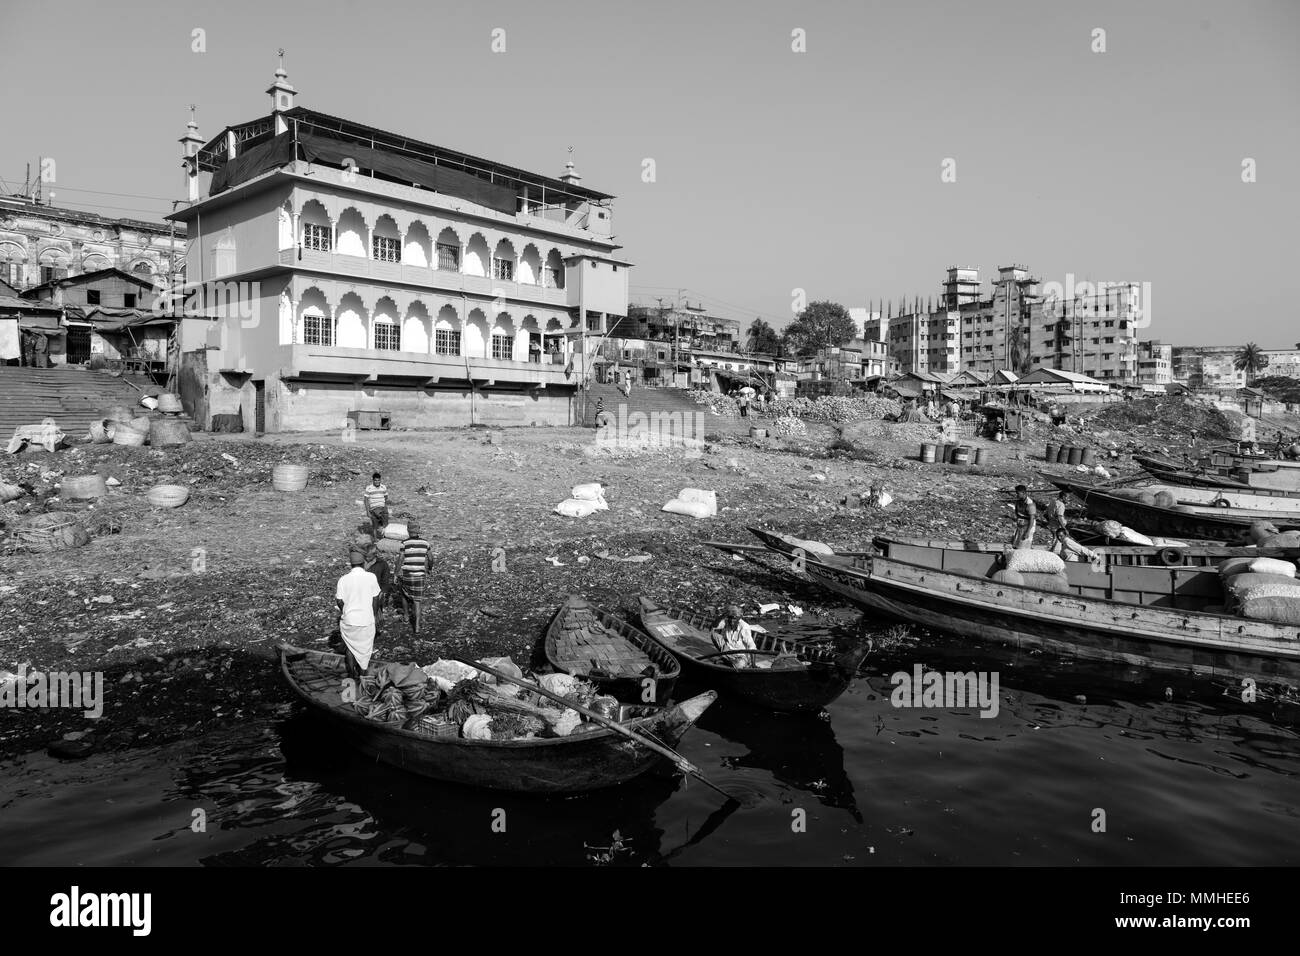 Dhaka, Bangladesh, 24 de febrero de 2017: la manipulación de la mercancía de frutas y verduras en el río Buriganga en Dhaka, Bangladesh Foto de stock